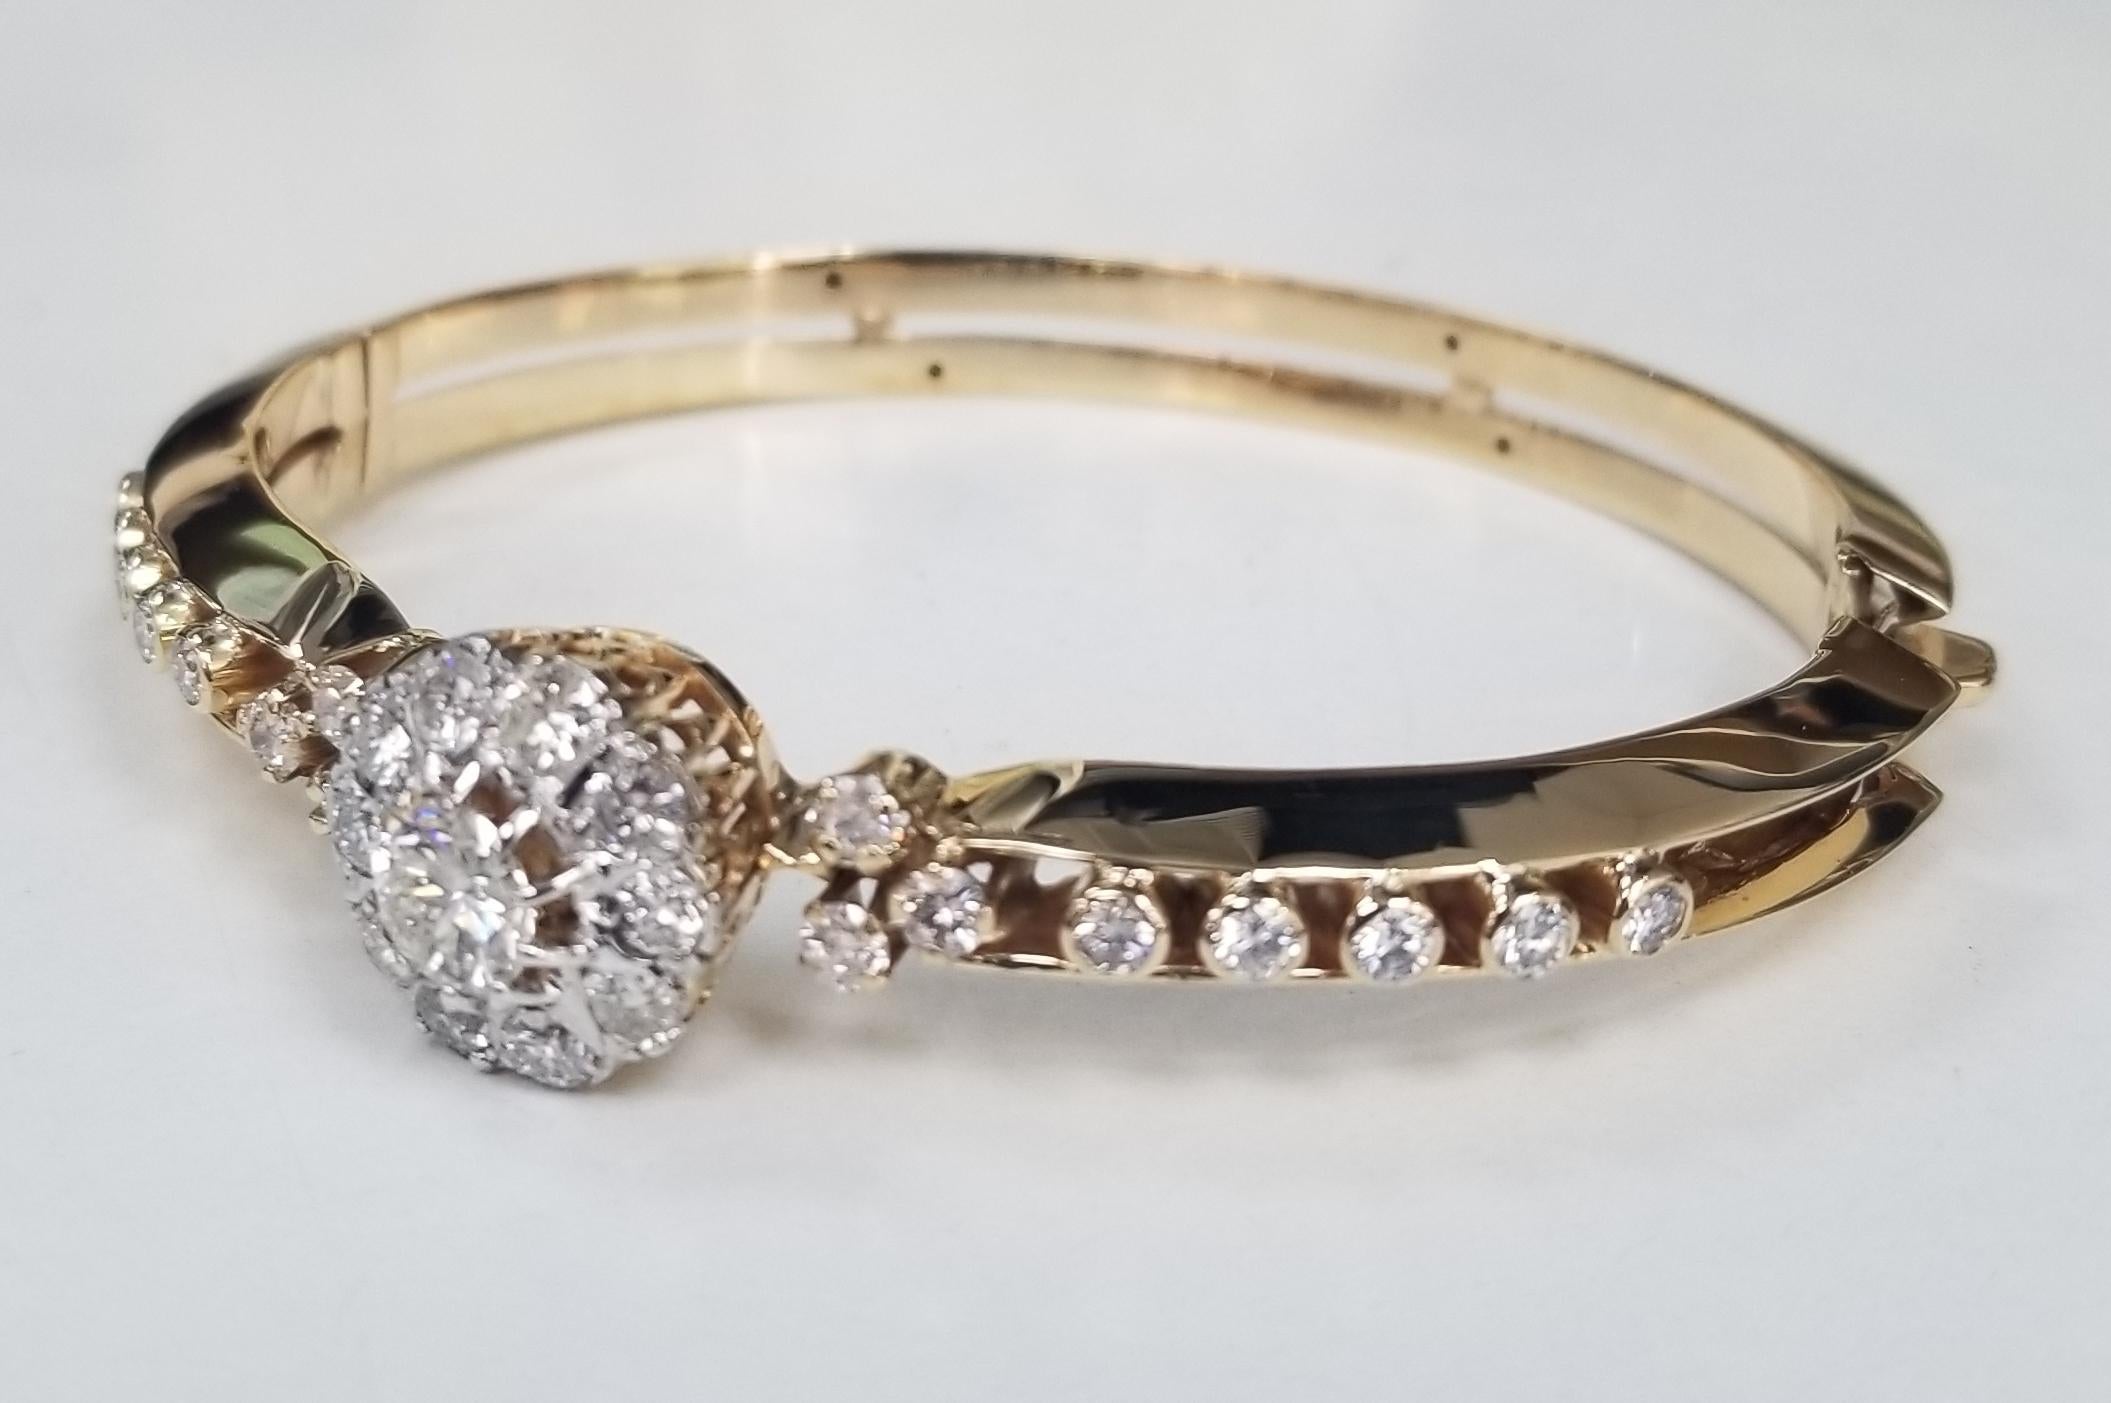 Vintage 14 Karat Yellow Gold Handmade Diamond Bangle Bracelet, contient 
Spécifications :
    pierre principale : DIAMANTS DE TAILLE RONDE
    poids total en carats : diamant central .77pts. couleur H et pureté SI2
   diamants supplémentaires ; 26